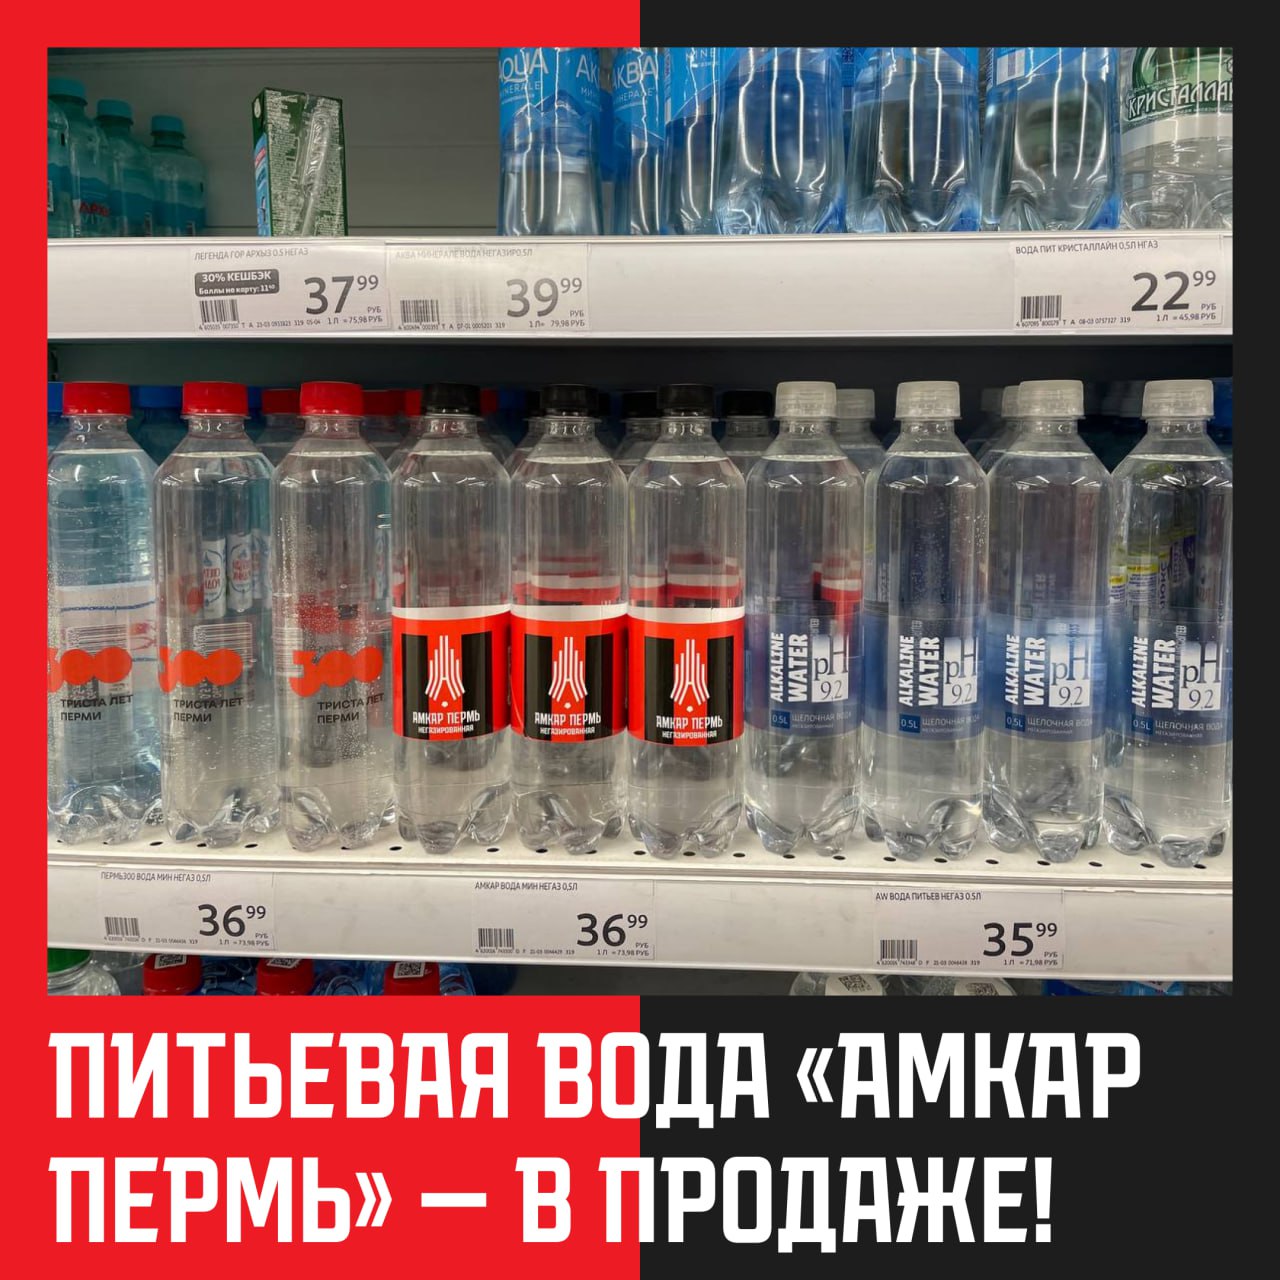 «Амкар» начал продавать фирменную воду